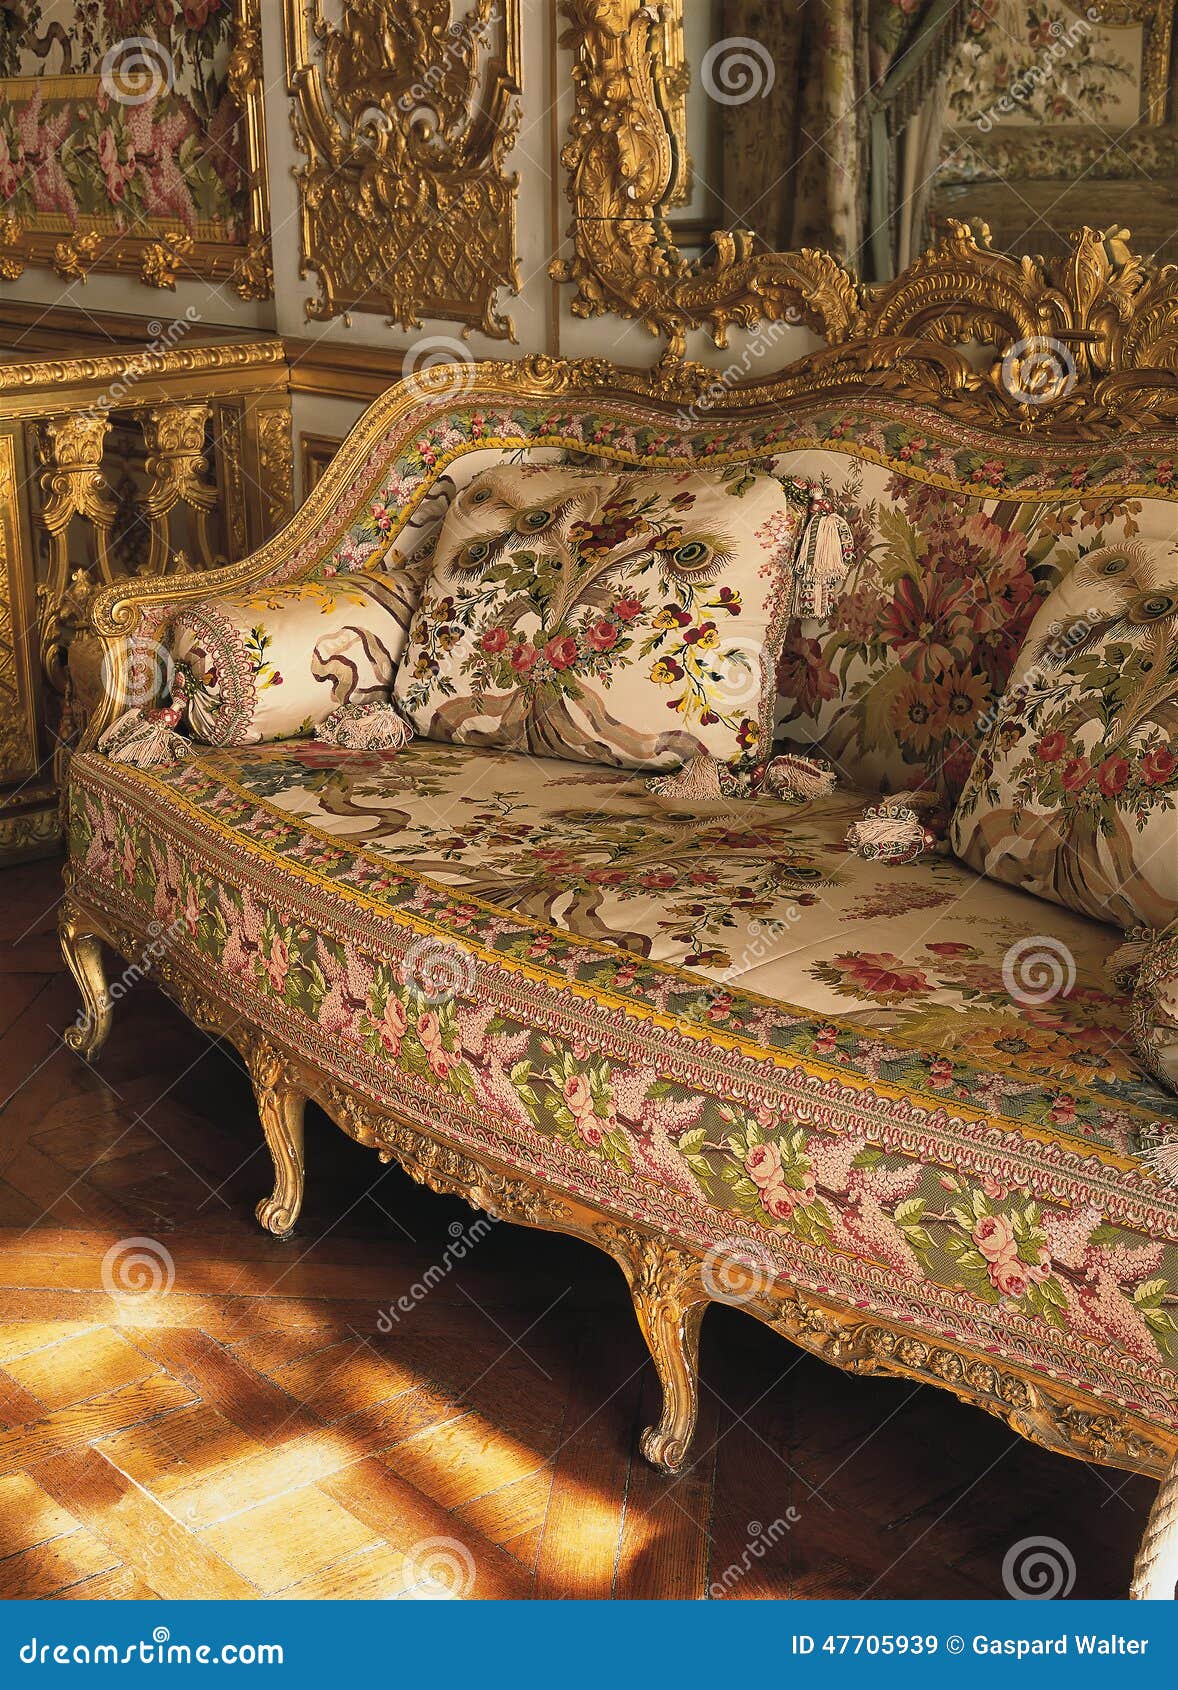 Existe Siempre champú Muebles En Dormitorio De La Reina Marie Antoinette En El Palacio De  Versalles Imagen de archivo editorial - Imagen de estatua, antonieta:  47705939